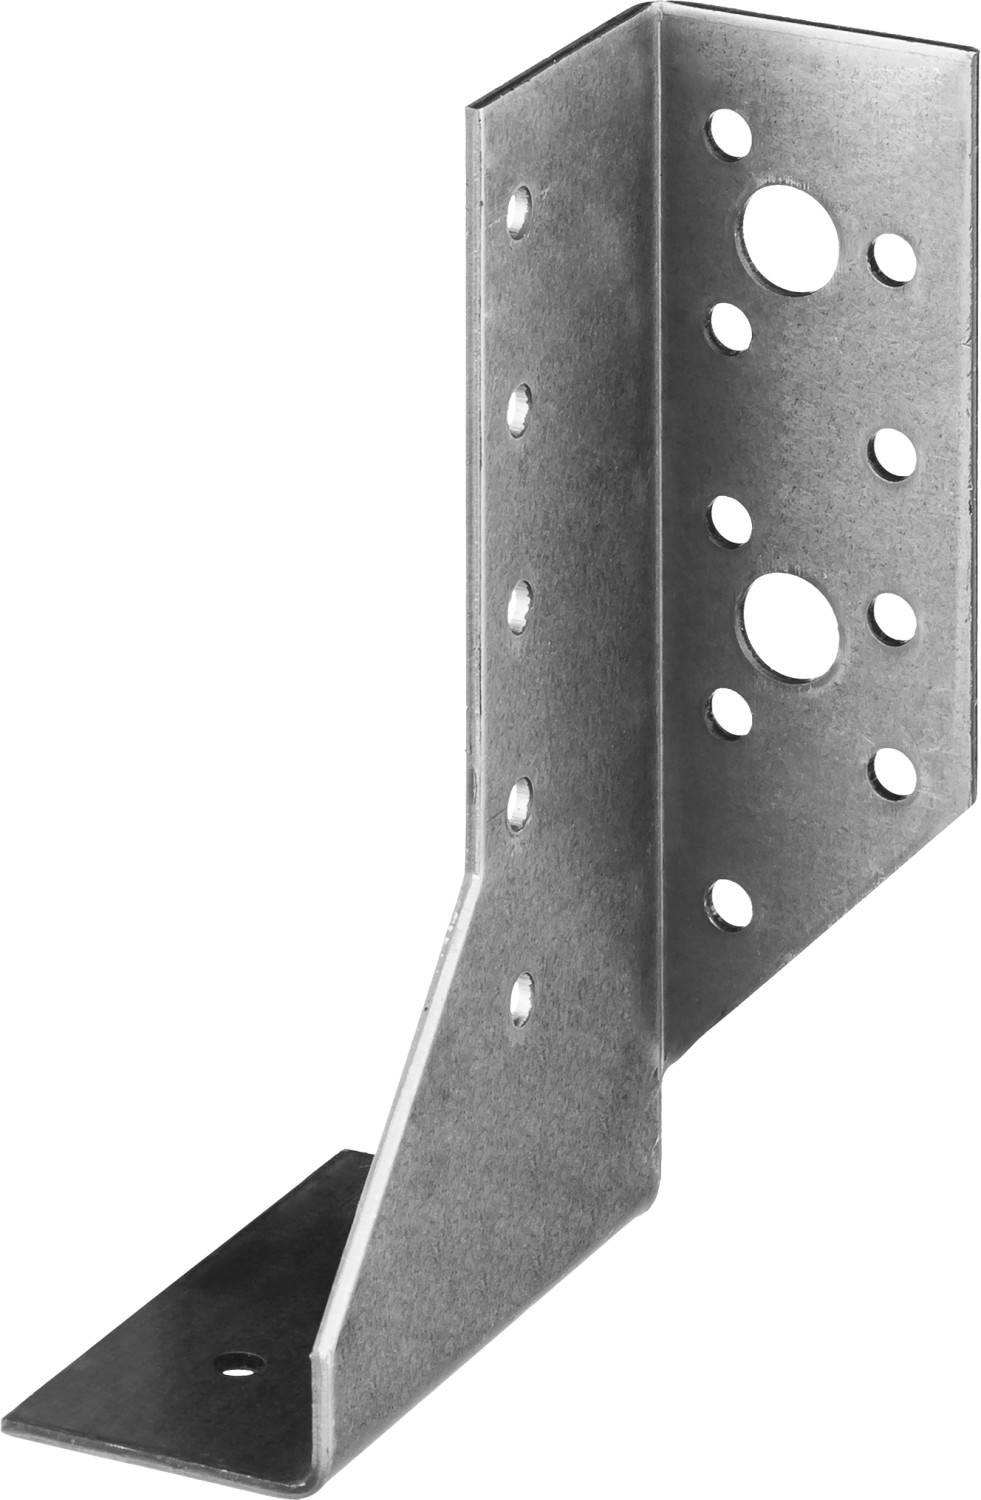 ЗУБР КБР-2.0, 130 x 75 x 30 x 2 мм, разрезное крепление балки правостороннее (310166-130-R)